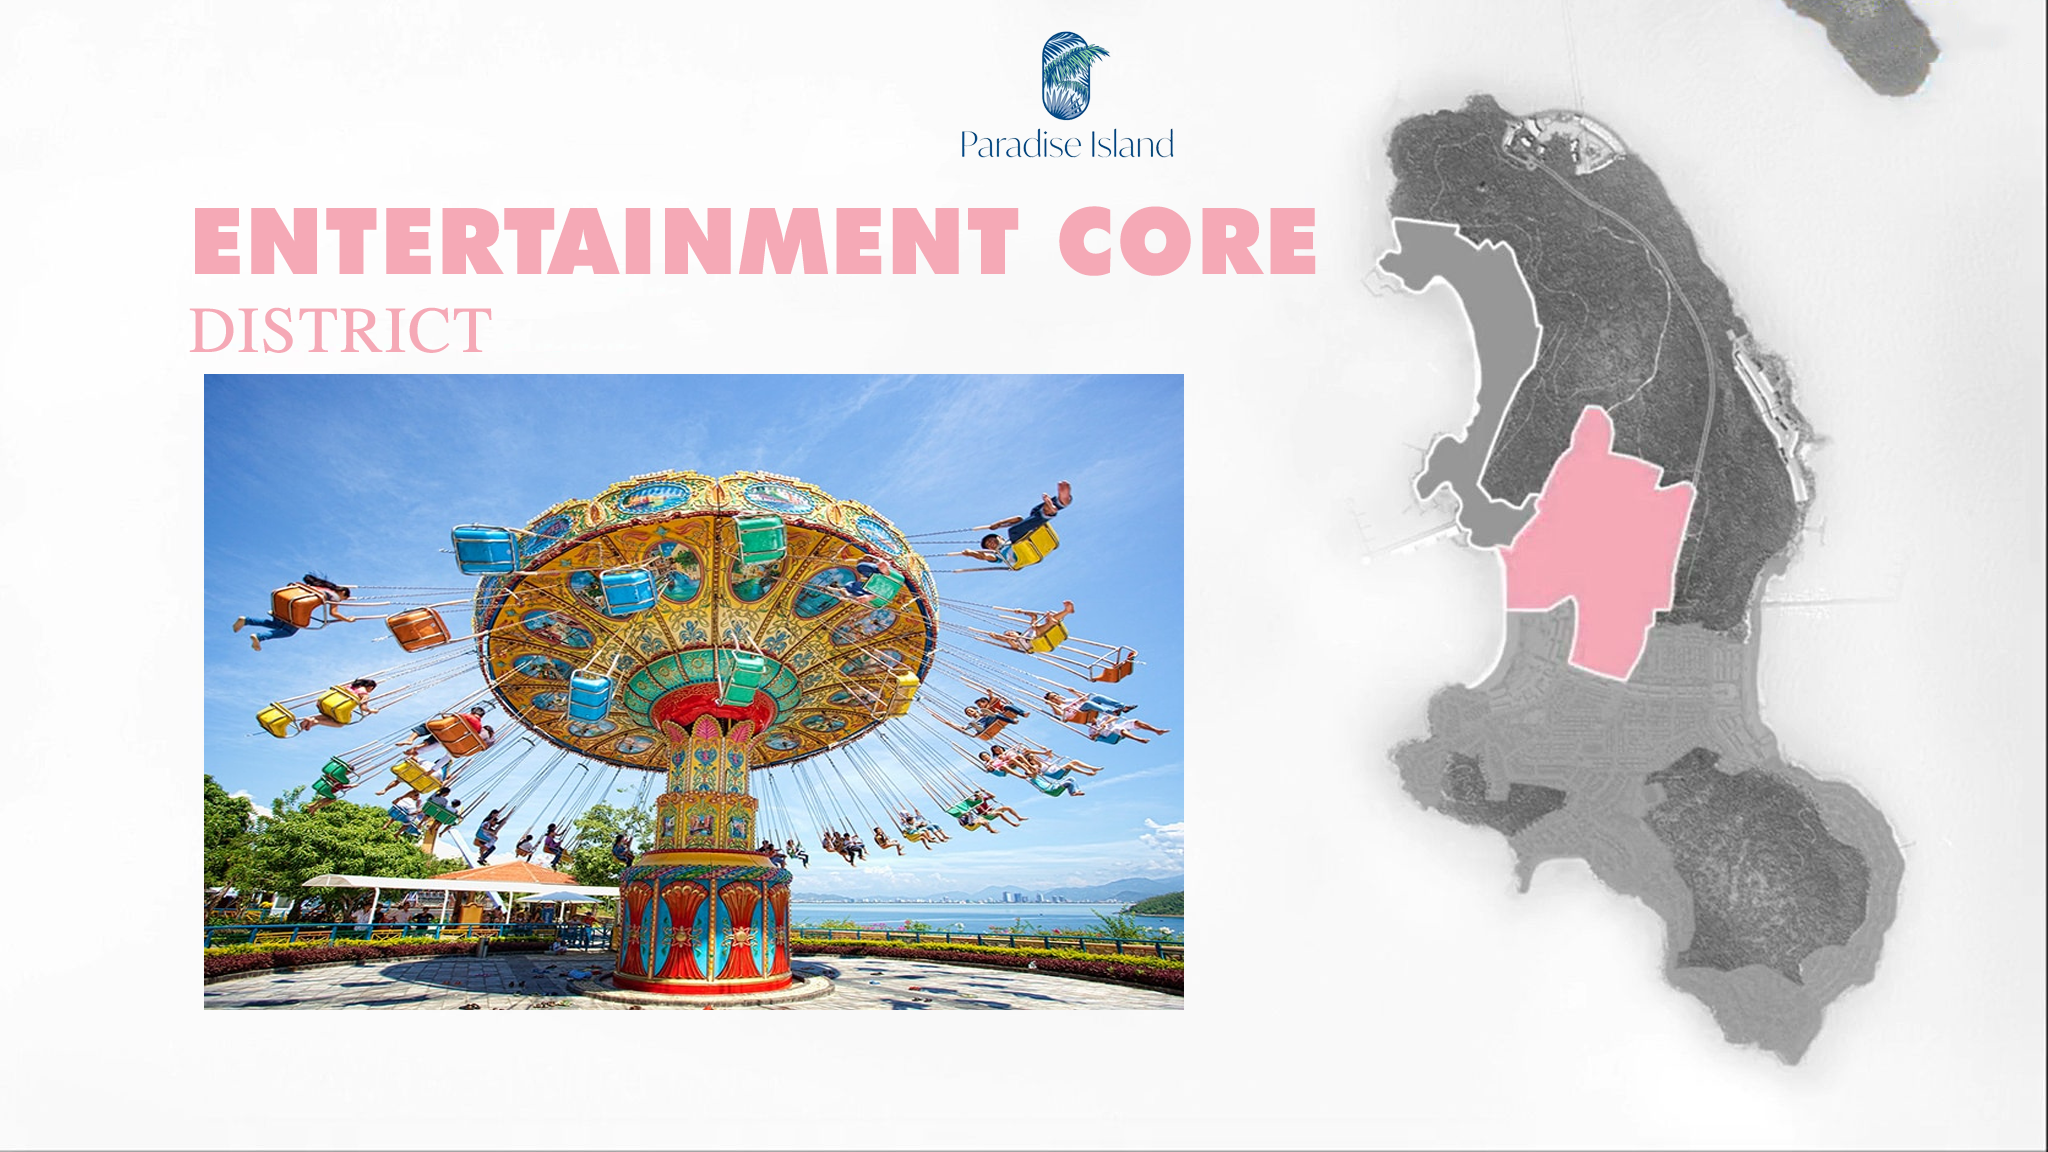 Trung tâm vui chơi giải trí tại Paradise Island Phú Quốc- Entertainment Core District